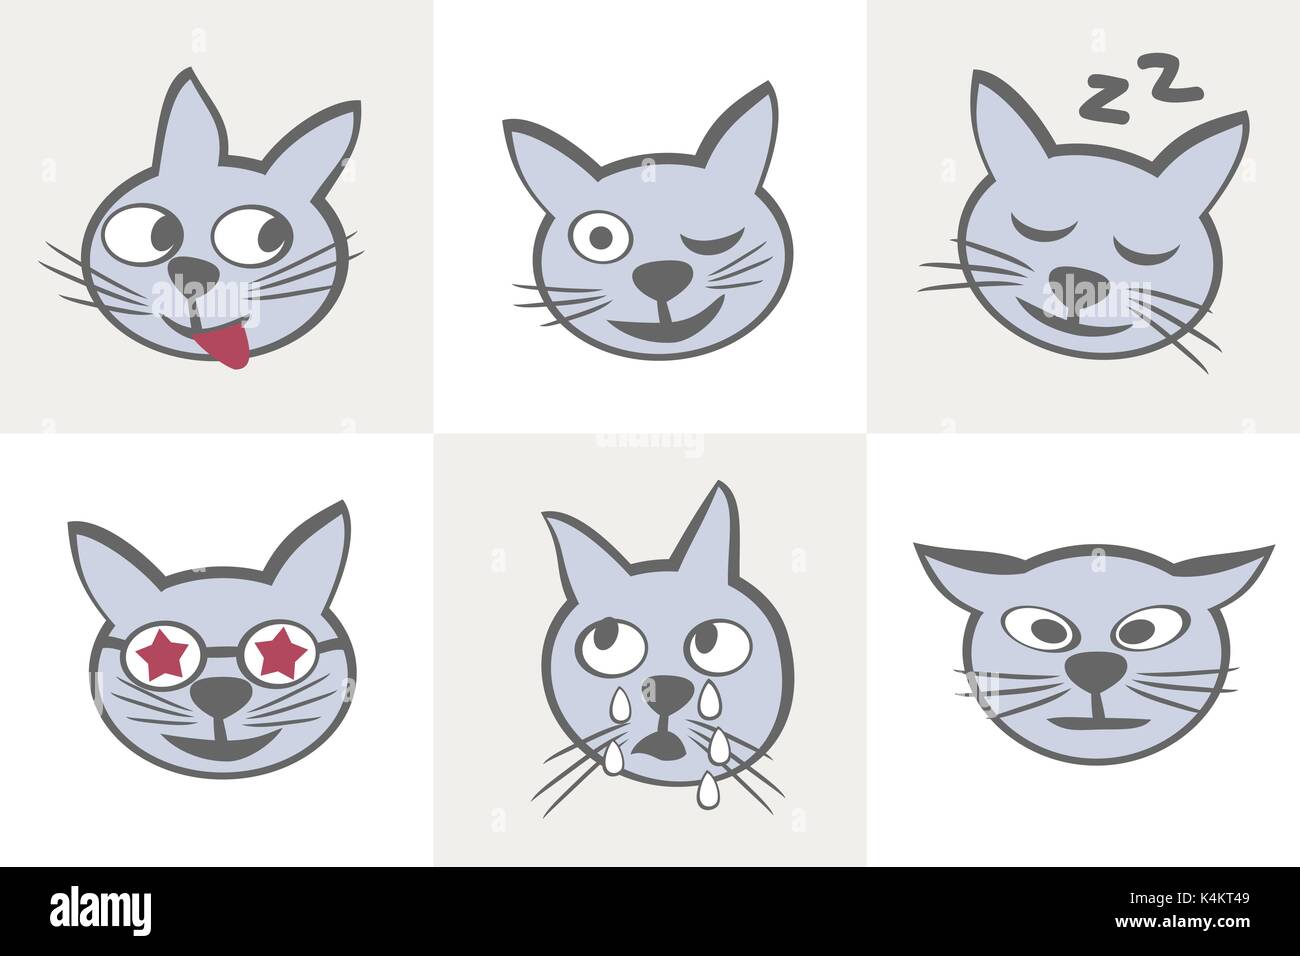 Kawaii Cute Cat Face with Ears. Positive Emotions. Cartoon Vector